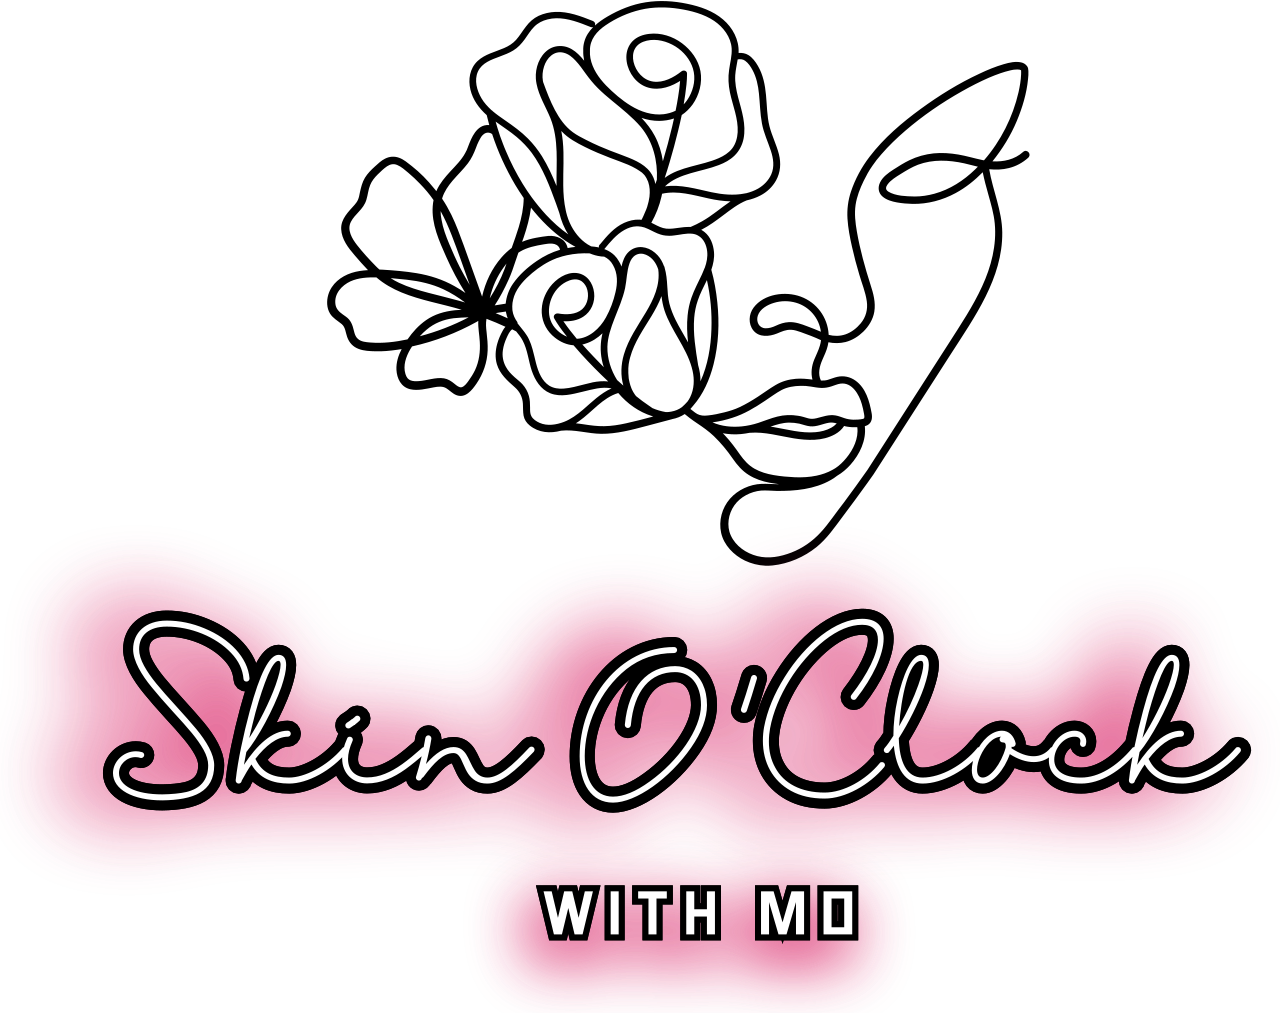 Skin O'Clock 's logo